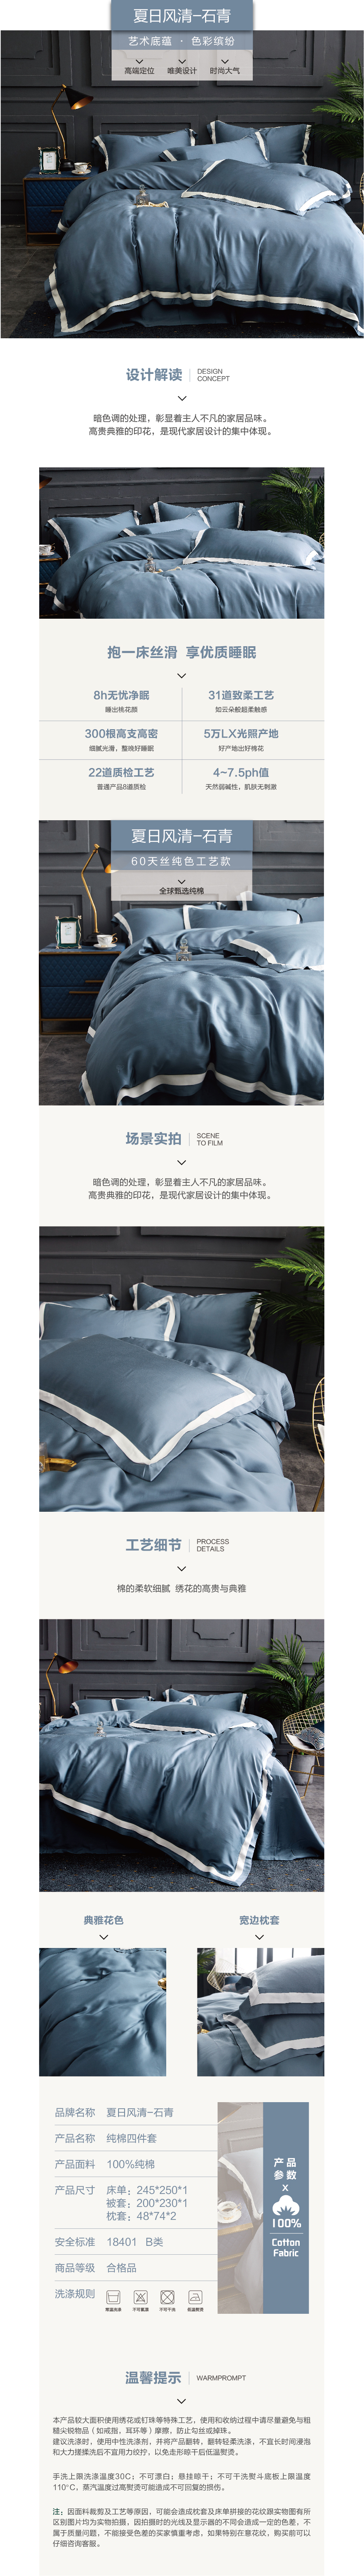 床上用品 纯棉四件套 蕾丝工艺 60天丝纯色工艺系列 石青